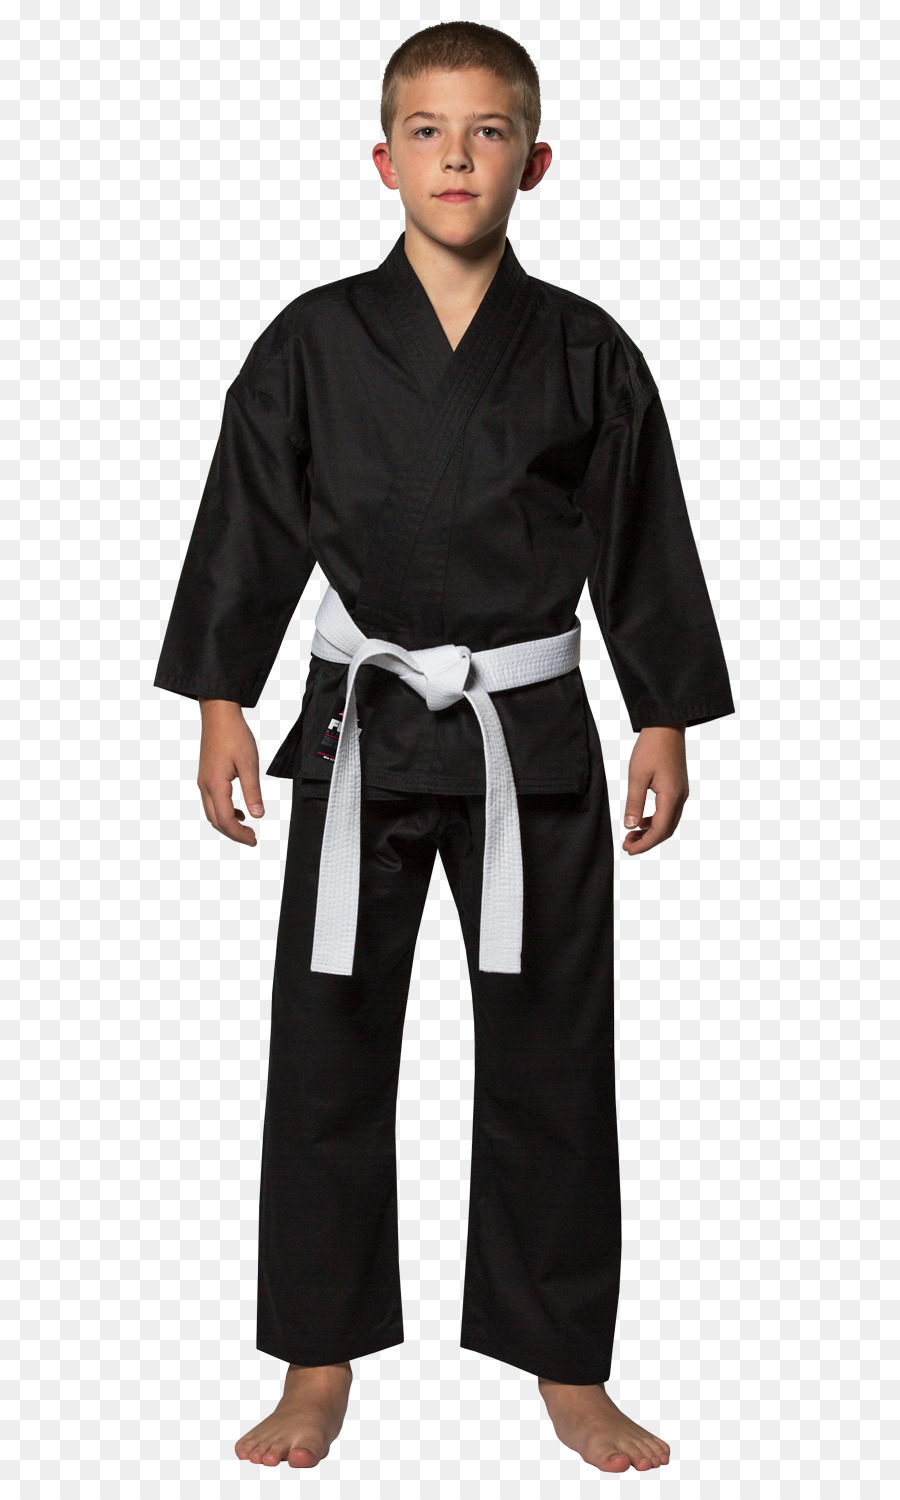 Karate ist Lacy Katzen LLP Dobok Grappling Kimono - Karate